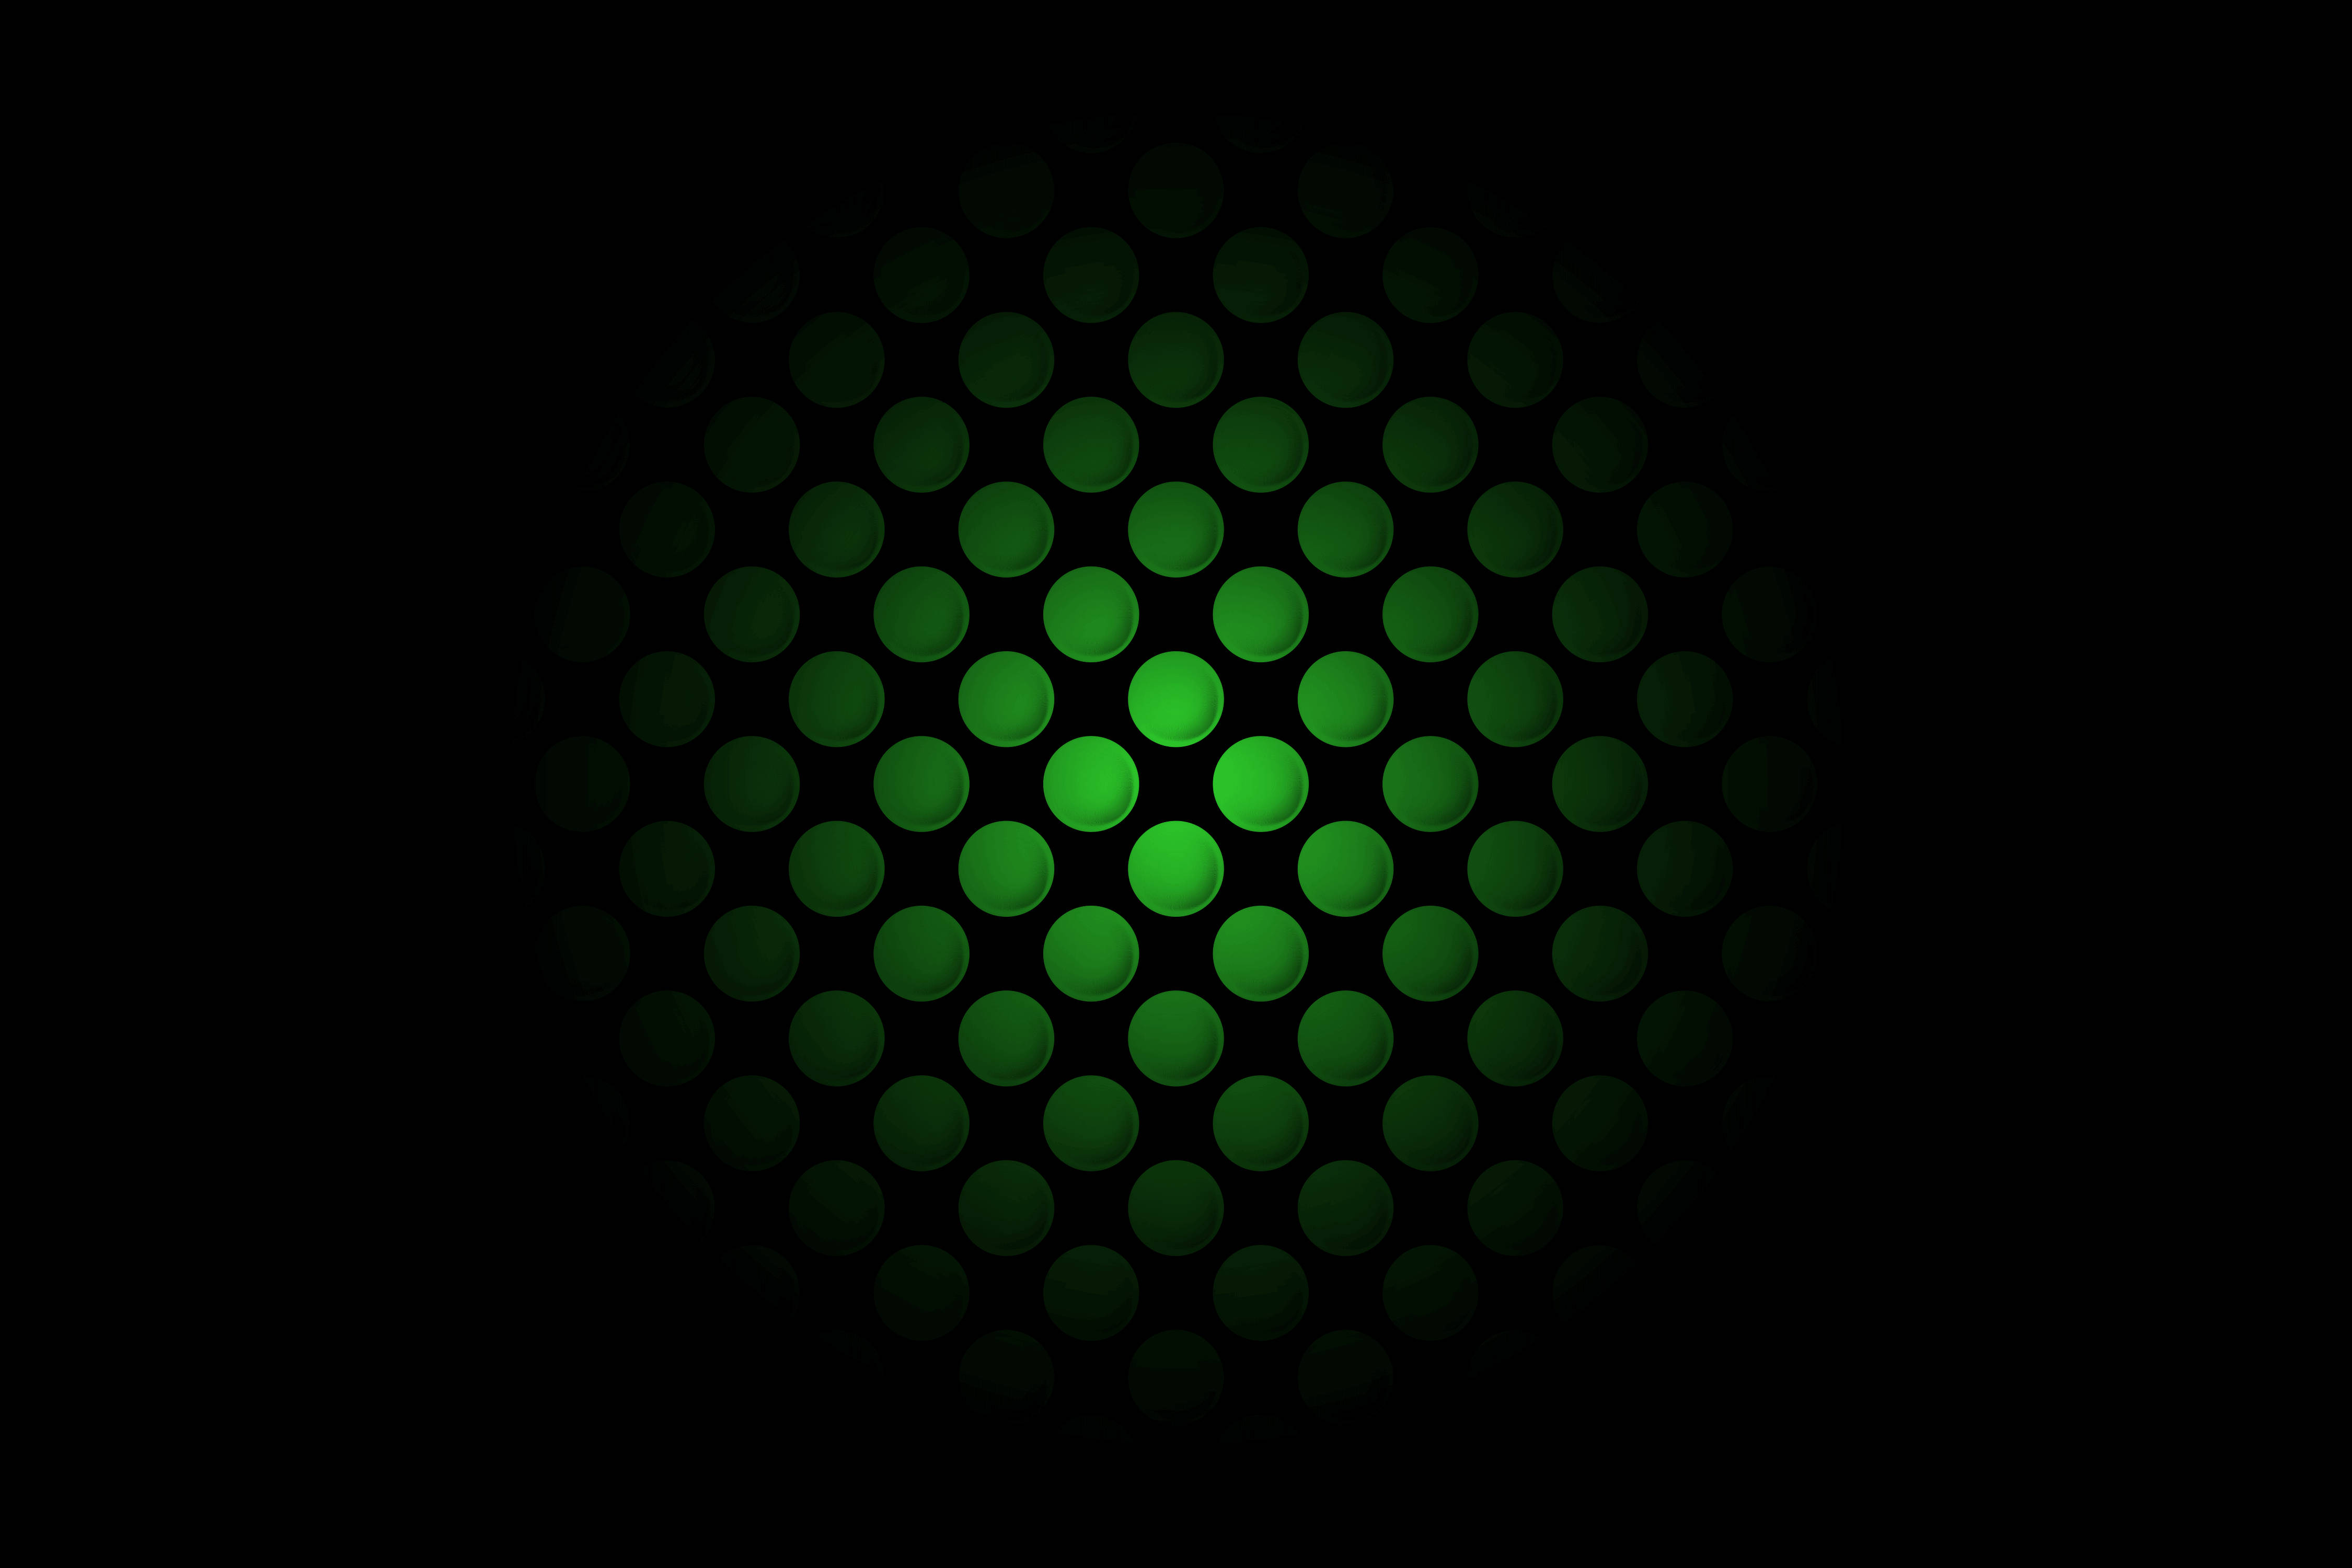 Xbox Series X Green Holes Wallpaper: Bạn đang tìm kiếm một hình nền góc xanh hấp dẫn cho Xbox Series X của mình? Hình ảnh liên quan đến từ khóa \